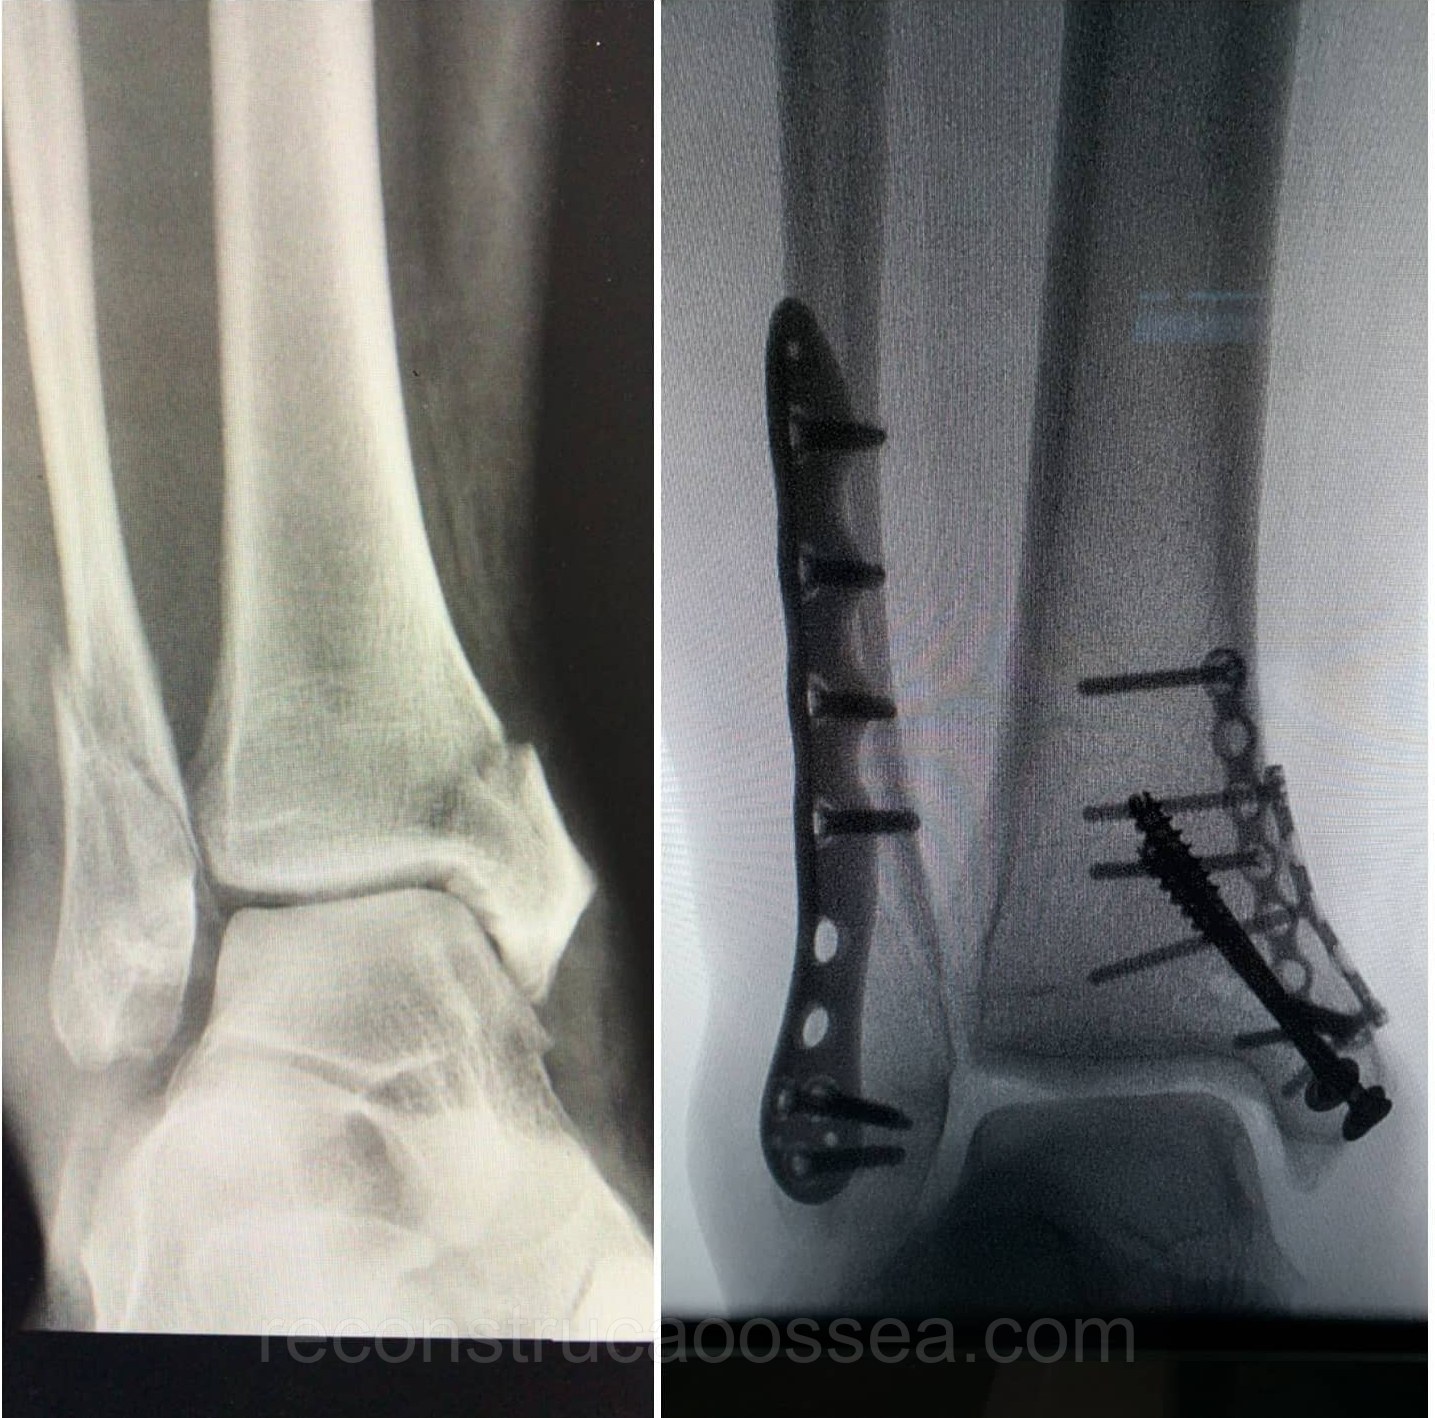 fratura-do-tornozelo-tratamento-cirurgico-8